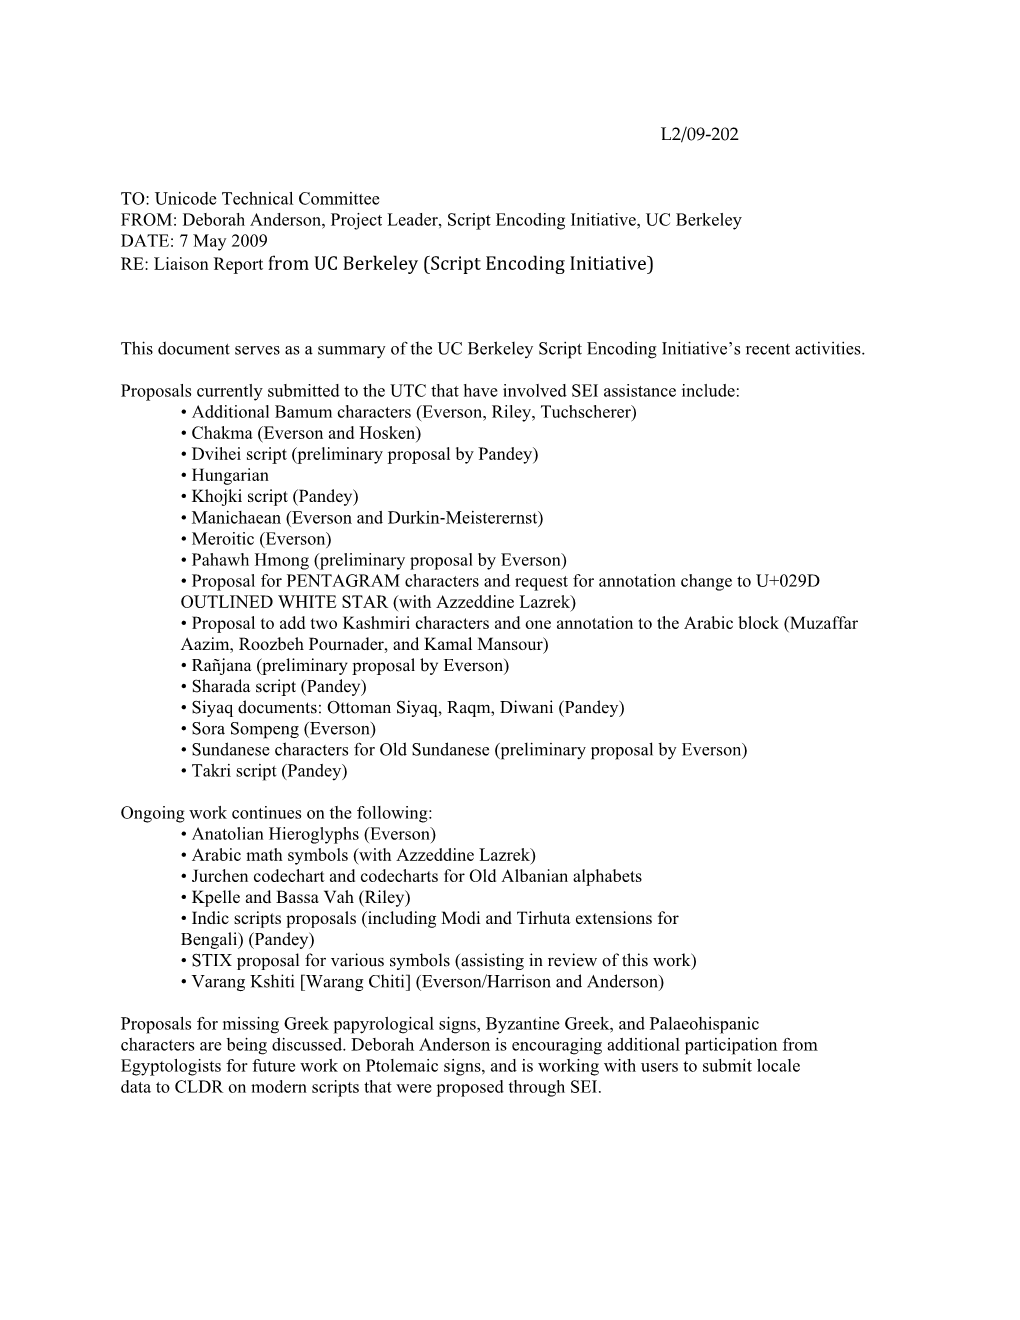 Script Encoding Initiative, UC Berkeley DATE: 7 May 2009 RE: Liaison Report from UC Berkeley (Script Encoding Initiative)